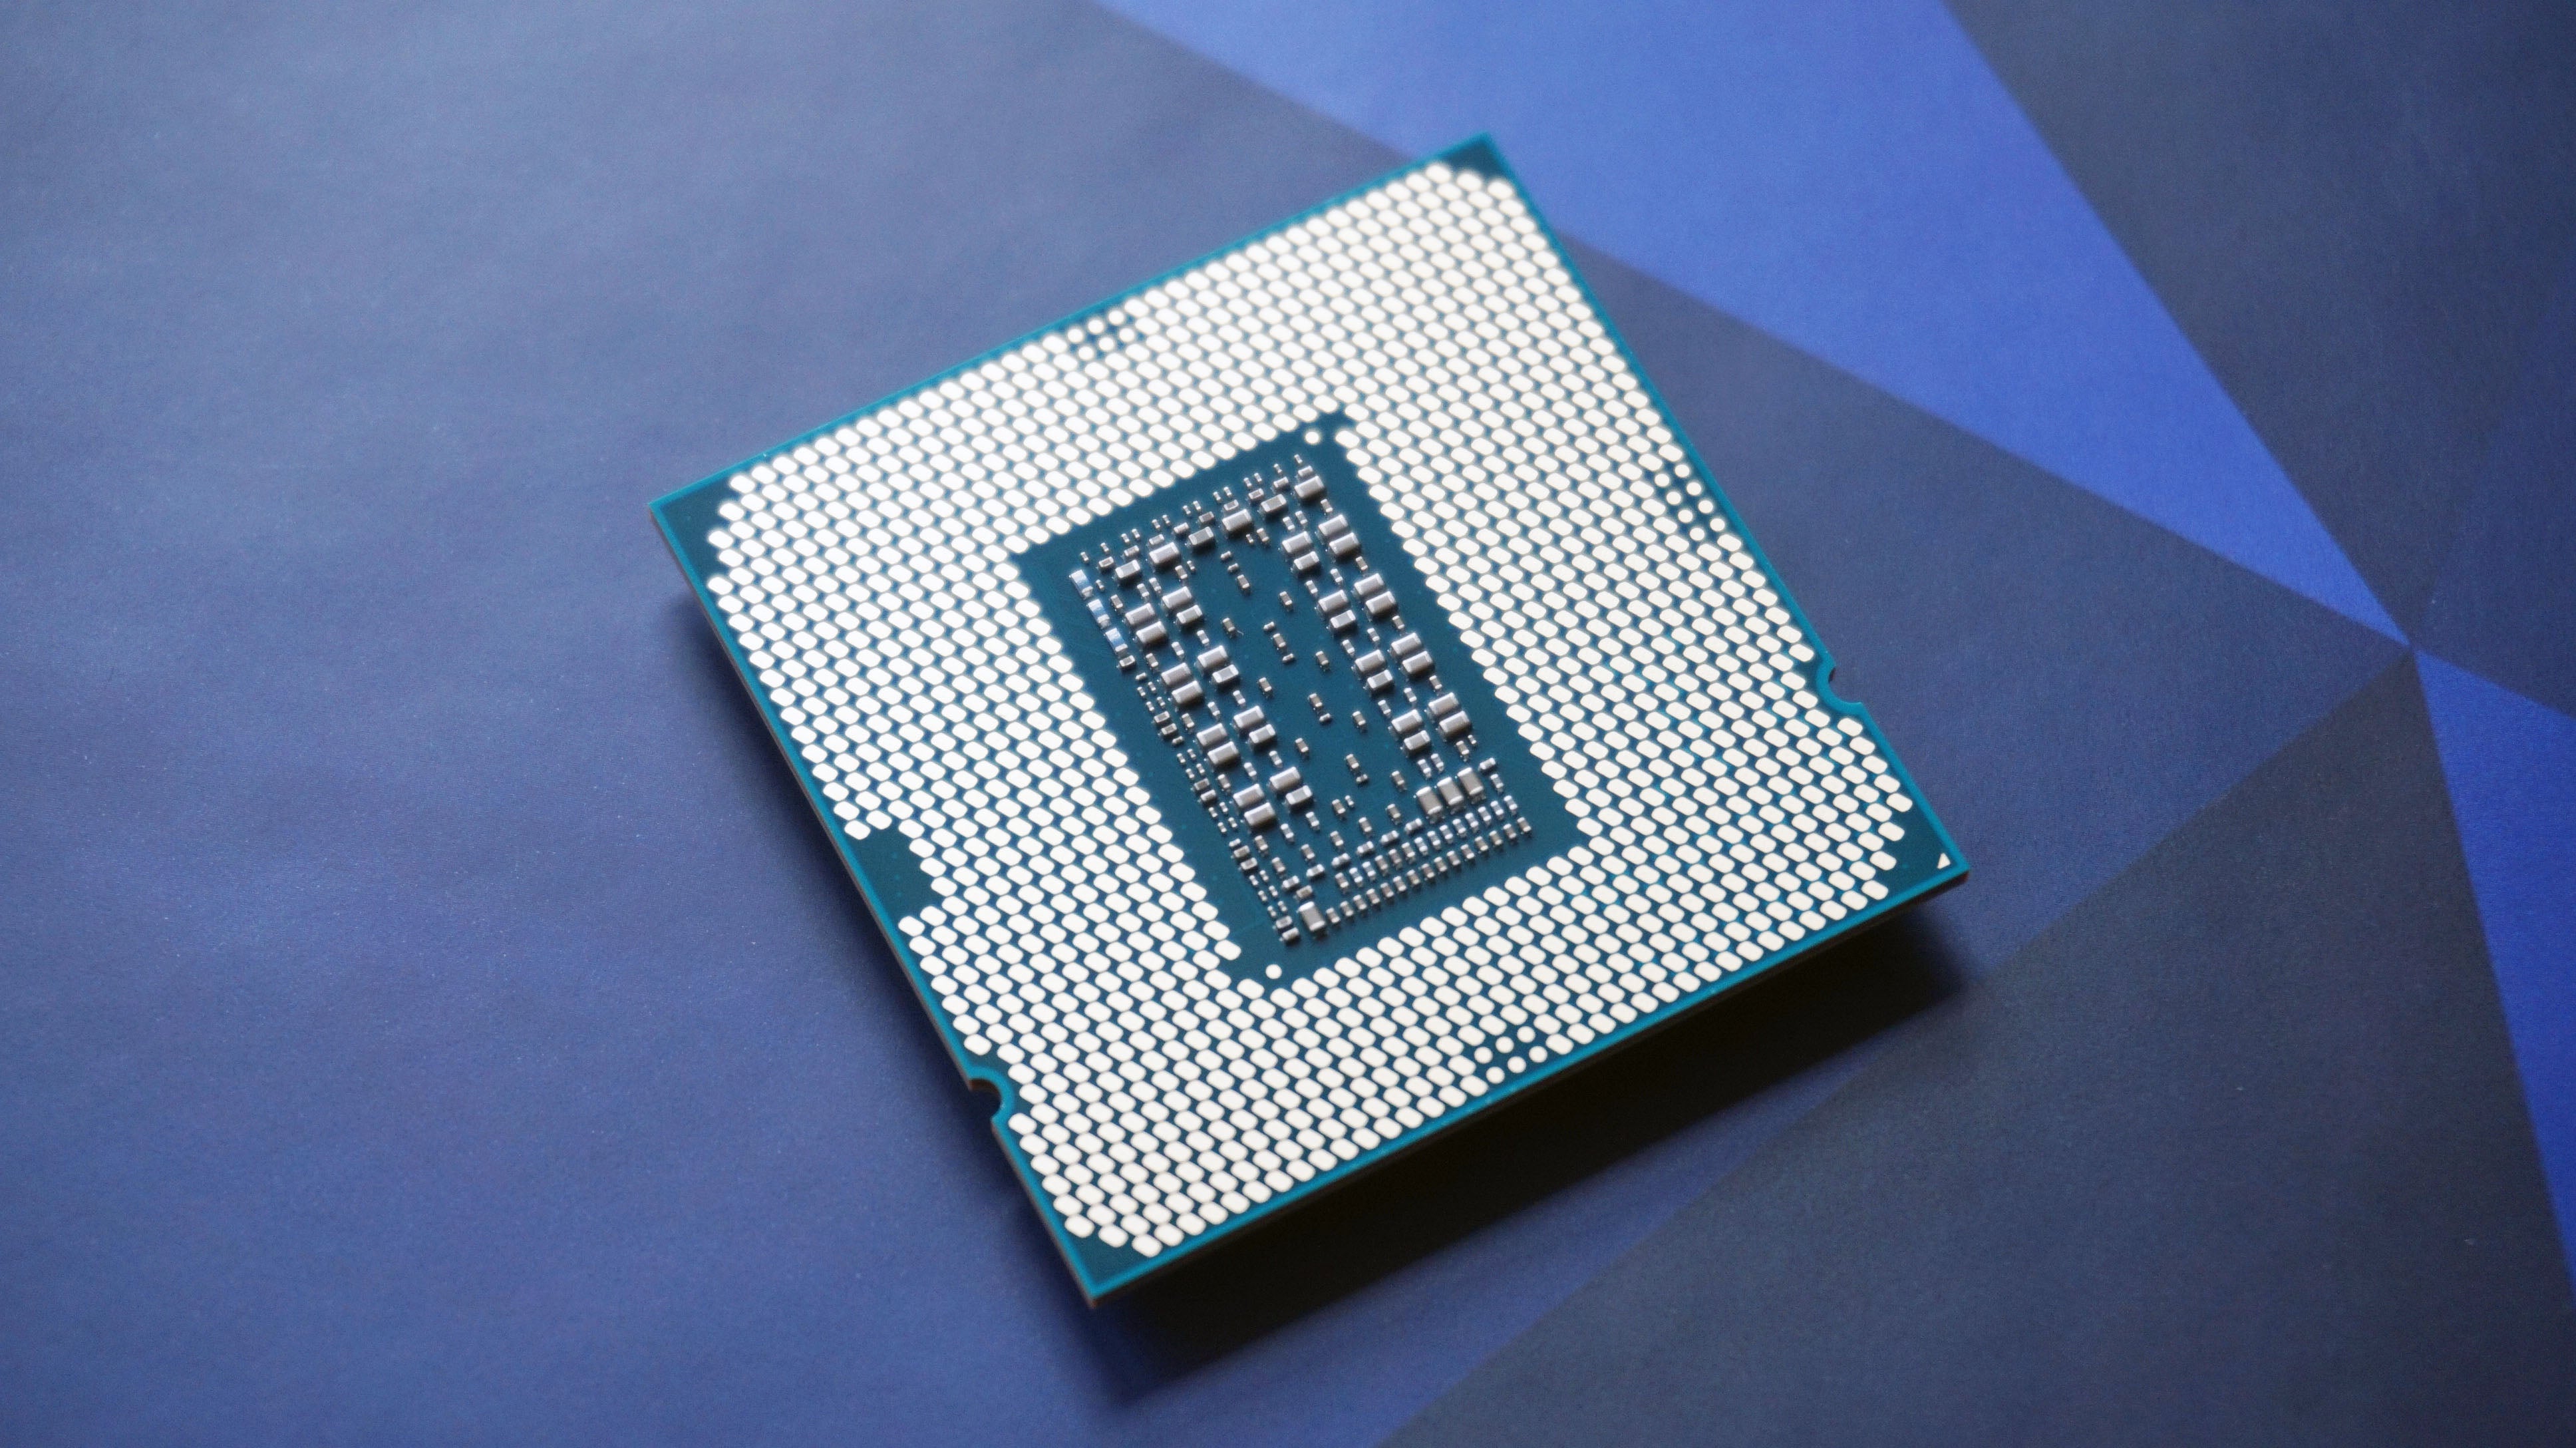 Intel's Core i9-11900K CPU